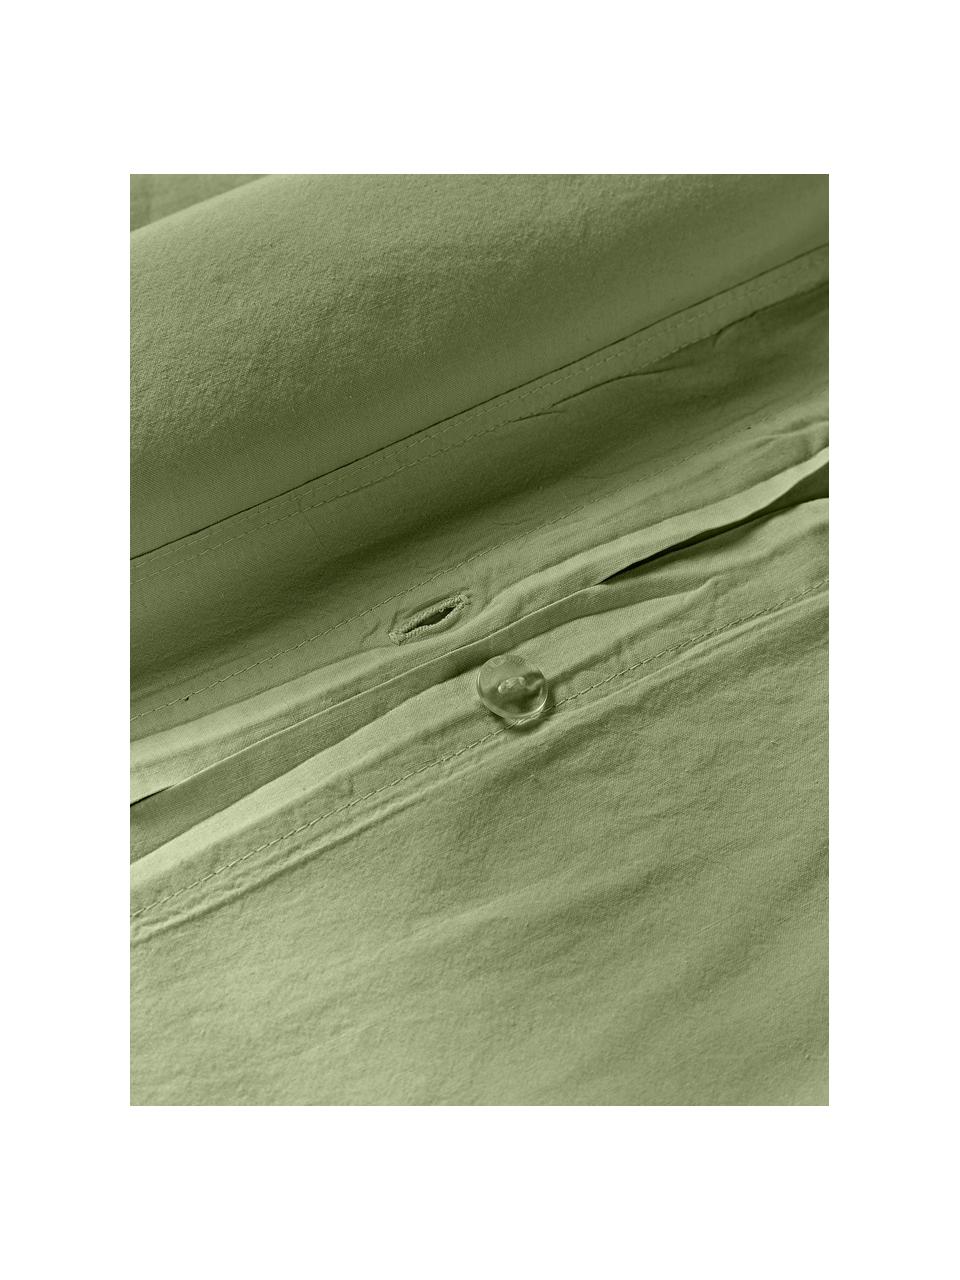 Bavlnená obliečka na paplón Darlyn, 100 %  bavlna
Hustota vlákna 150 TC, štandard kvalita

Posteľná bielizeň z bavlny je príjemná na dotyk, dobre absorbuje vlhkosť a je vhodná pre alergikov

Látka bola podrobená špeciálnemu procesu „Softwash”, ktorý zabezpečuje nepravidelný vypraný vzhľad, je mäkká, pružná a má prirodzený krčivý vzhľad, ktorý nevyžaduje žehlenie a pôsobí útulne

Materiál použitý v tomto produkte bol testovaný na škodlivé látky a certifikovaný podľa STANDARD 100 od OEKO-TEX®, 4265CIT, CITEVE., Olivovozelená, Š 200 x D 200 cm